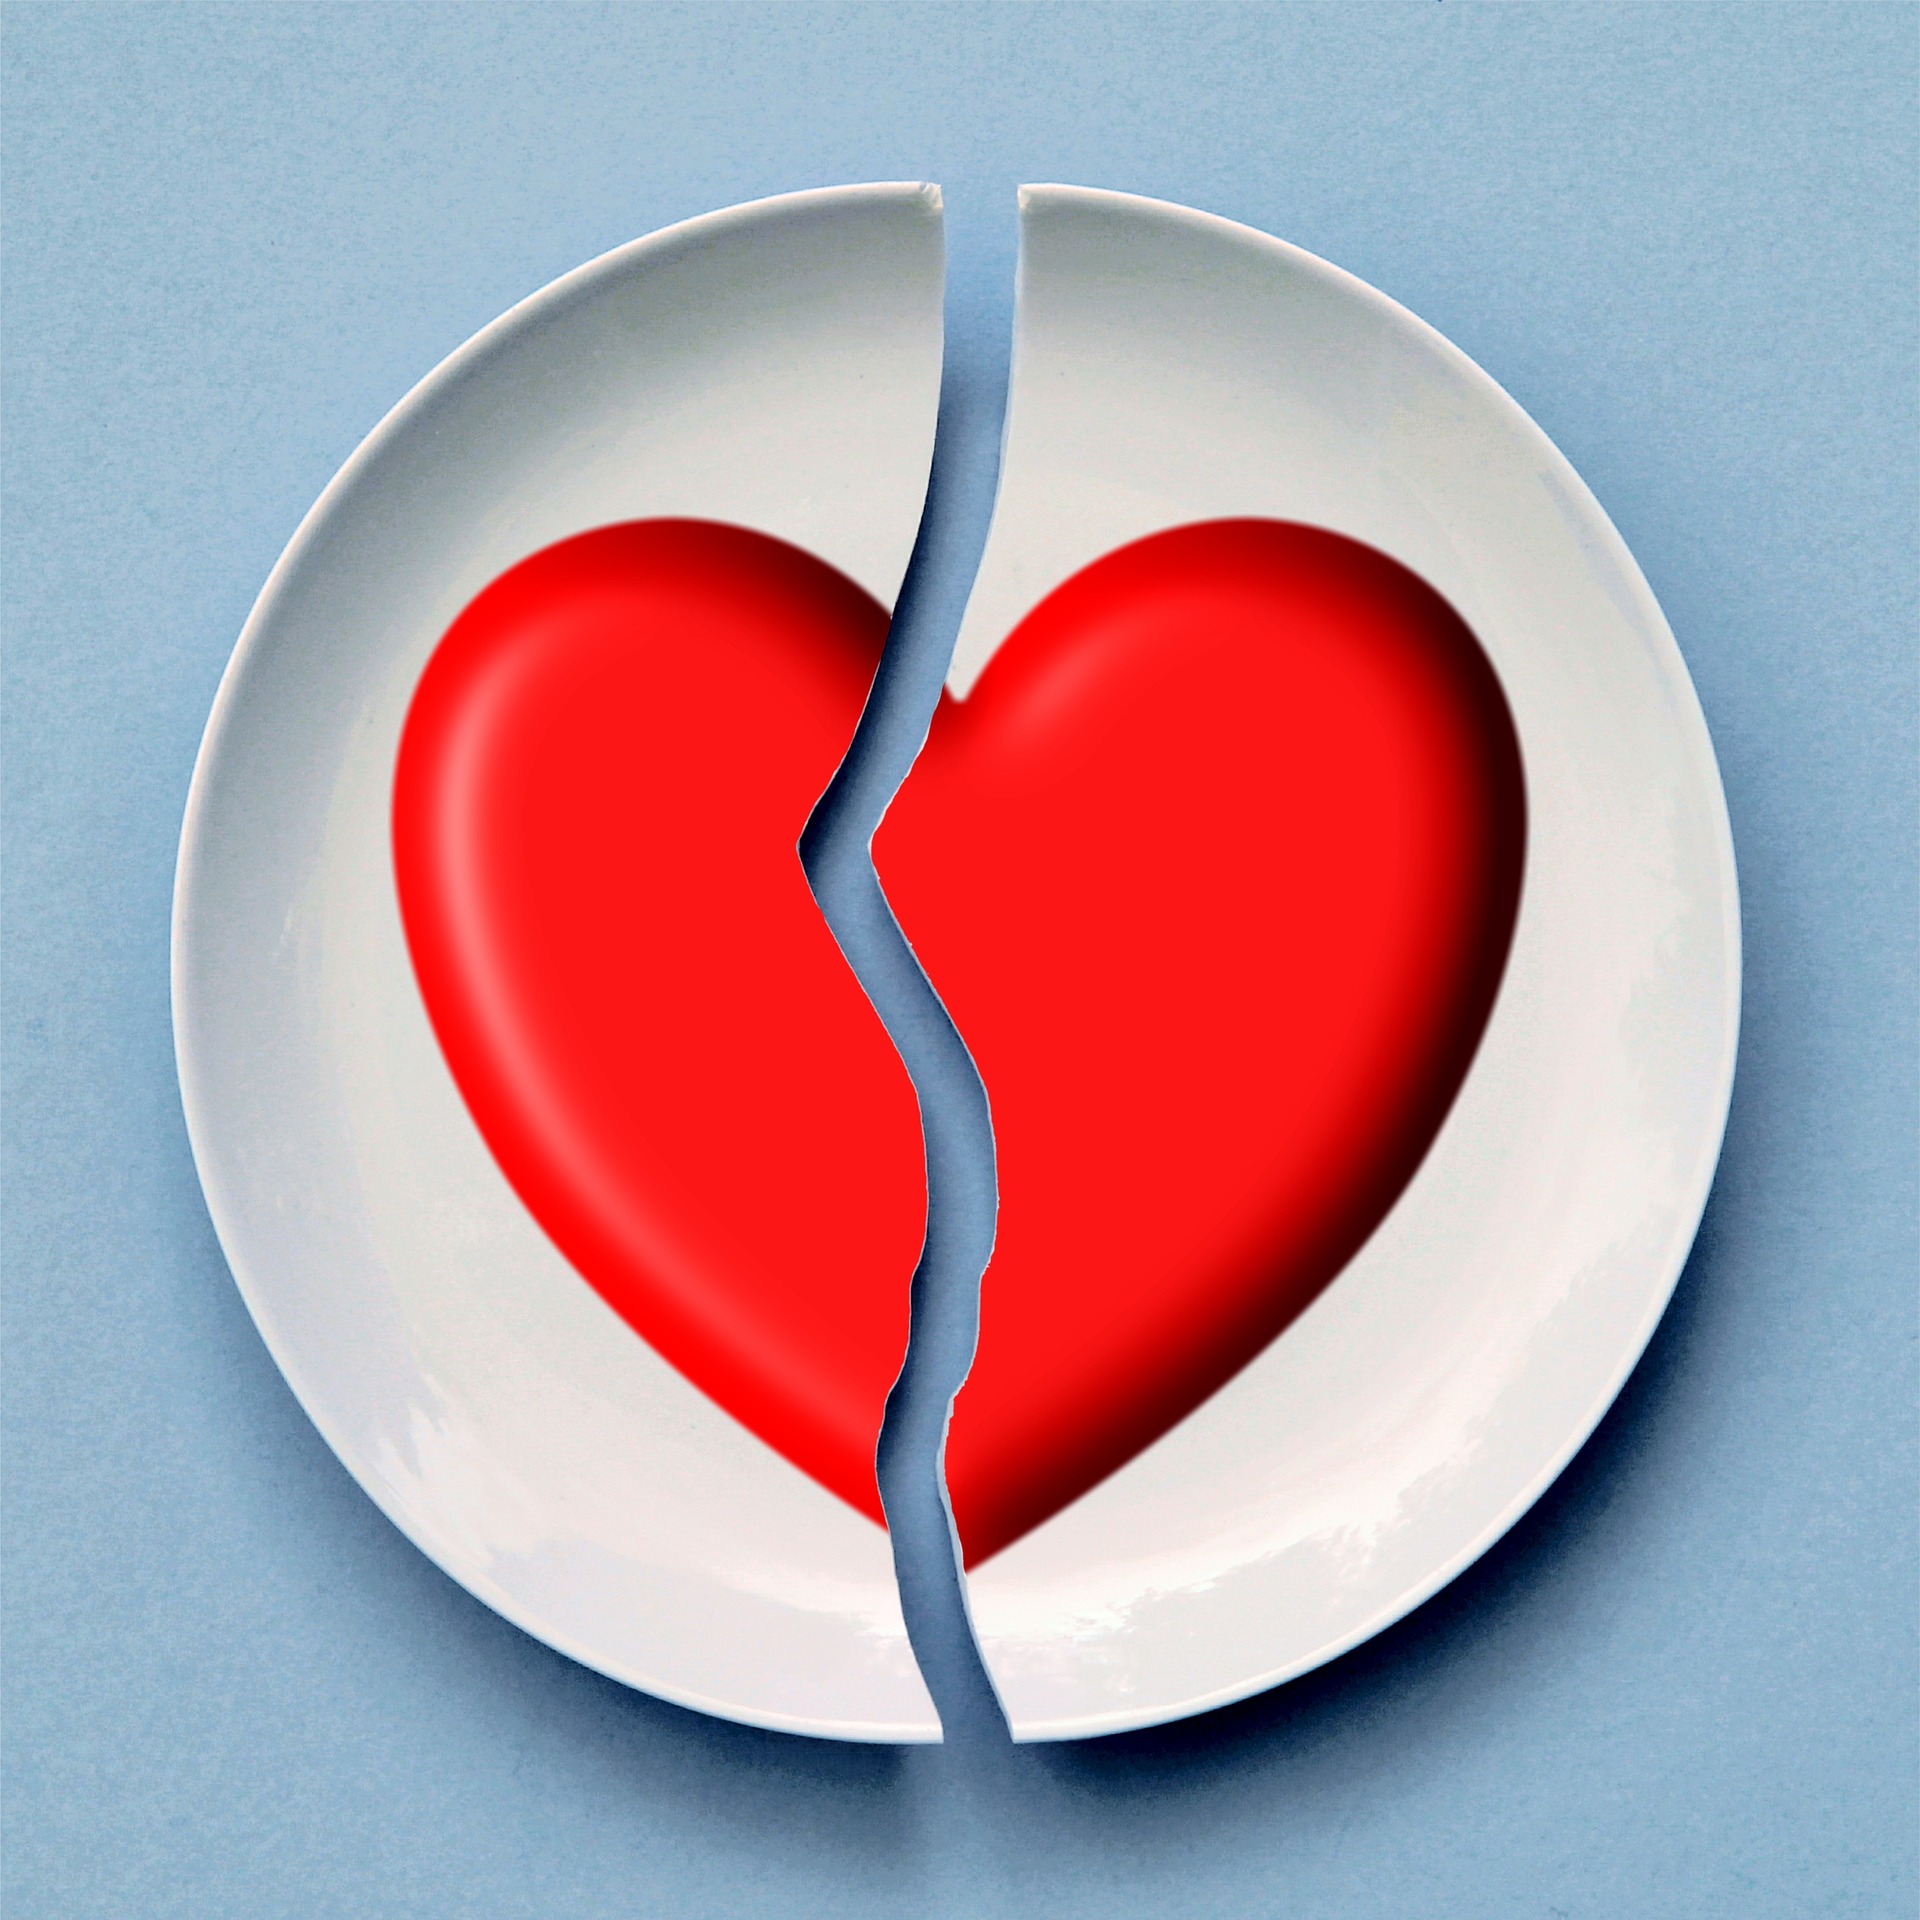 The science of heartbreak: A spouse’s death boosts risk of cardiac arrhythmia